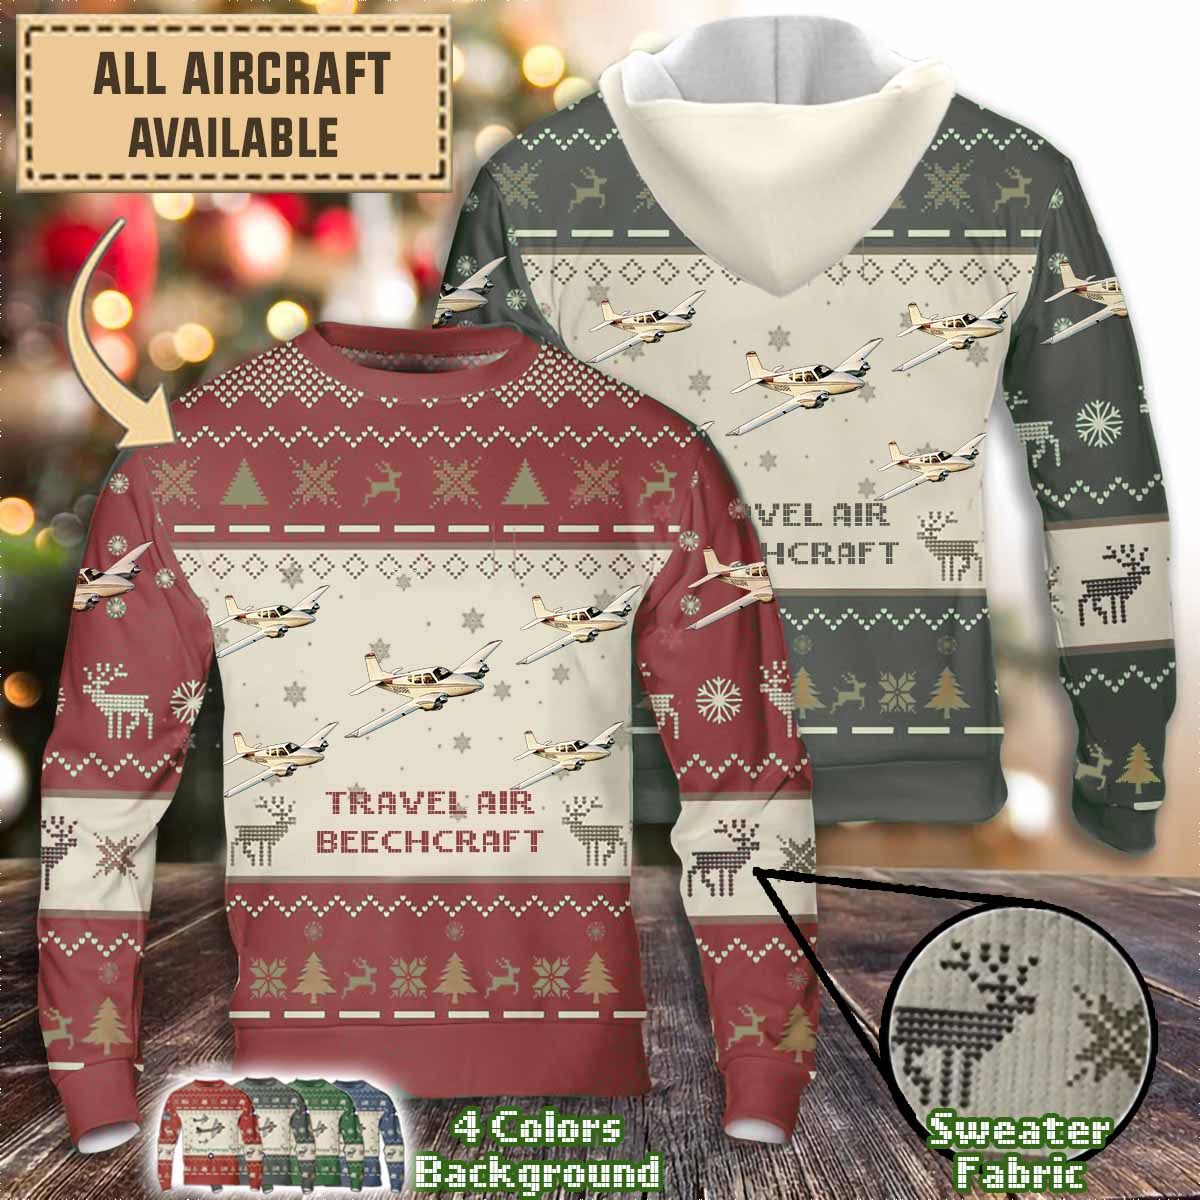 beechcraft travel air aircraft sweater dielk